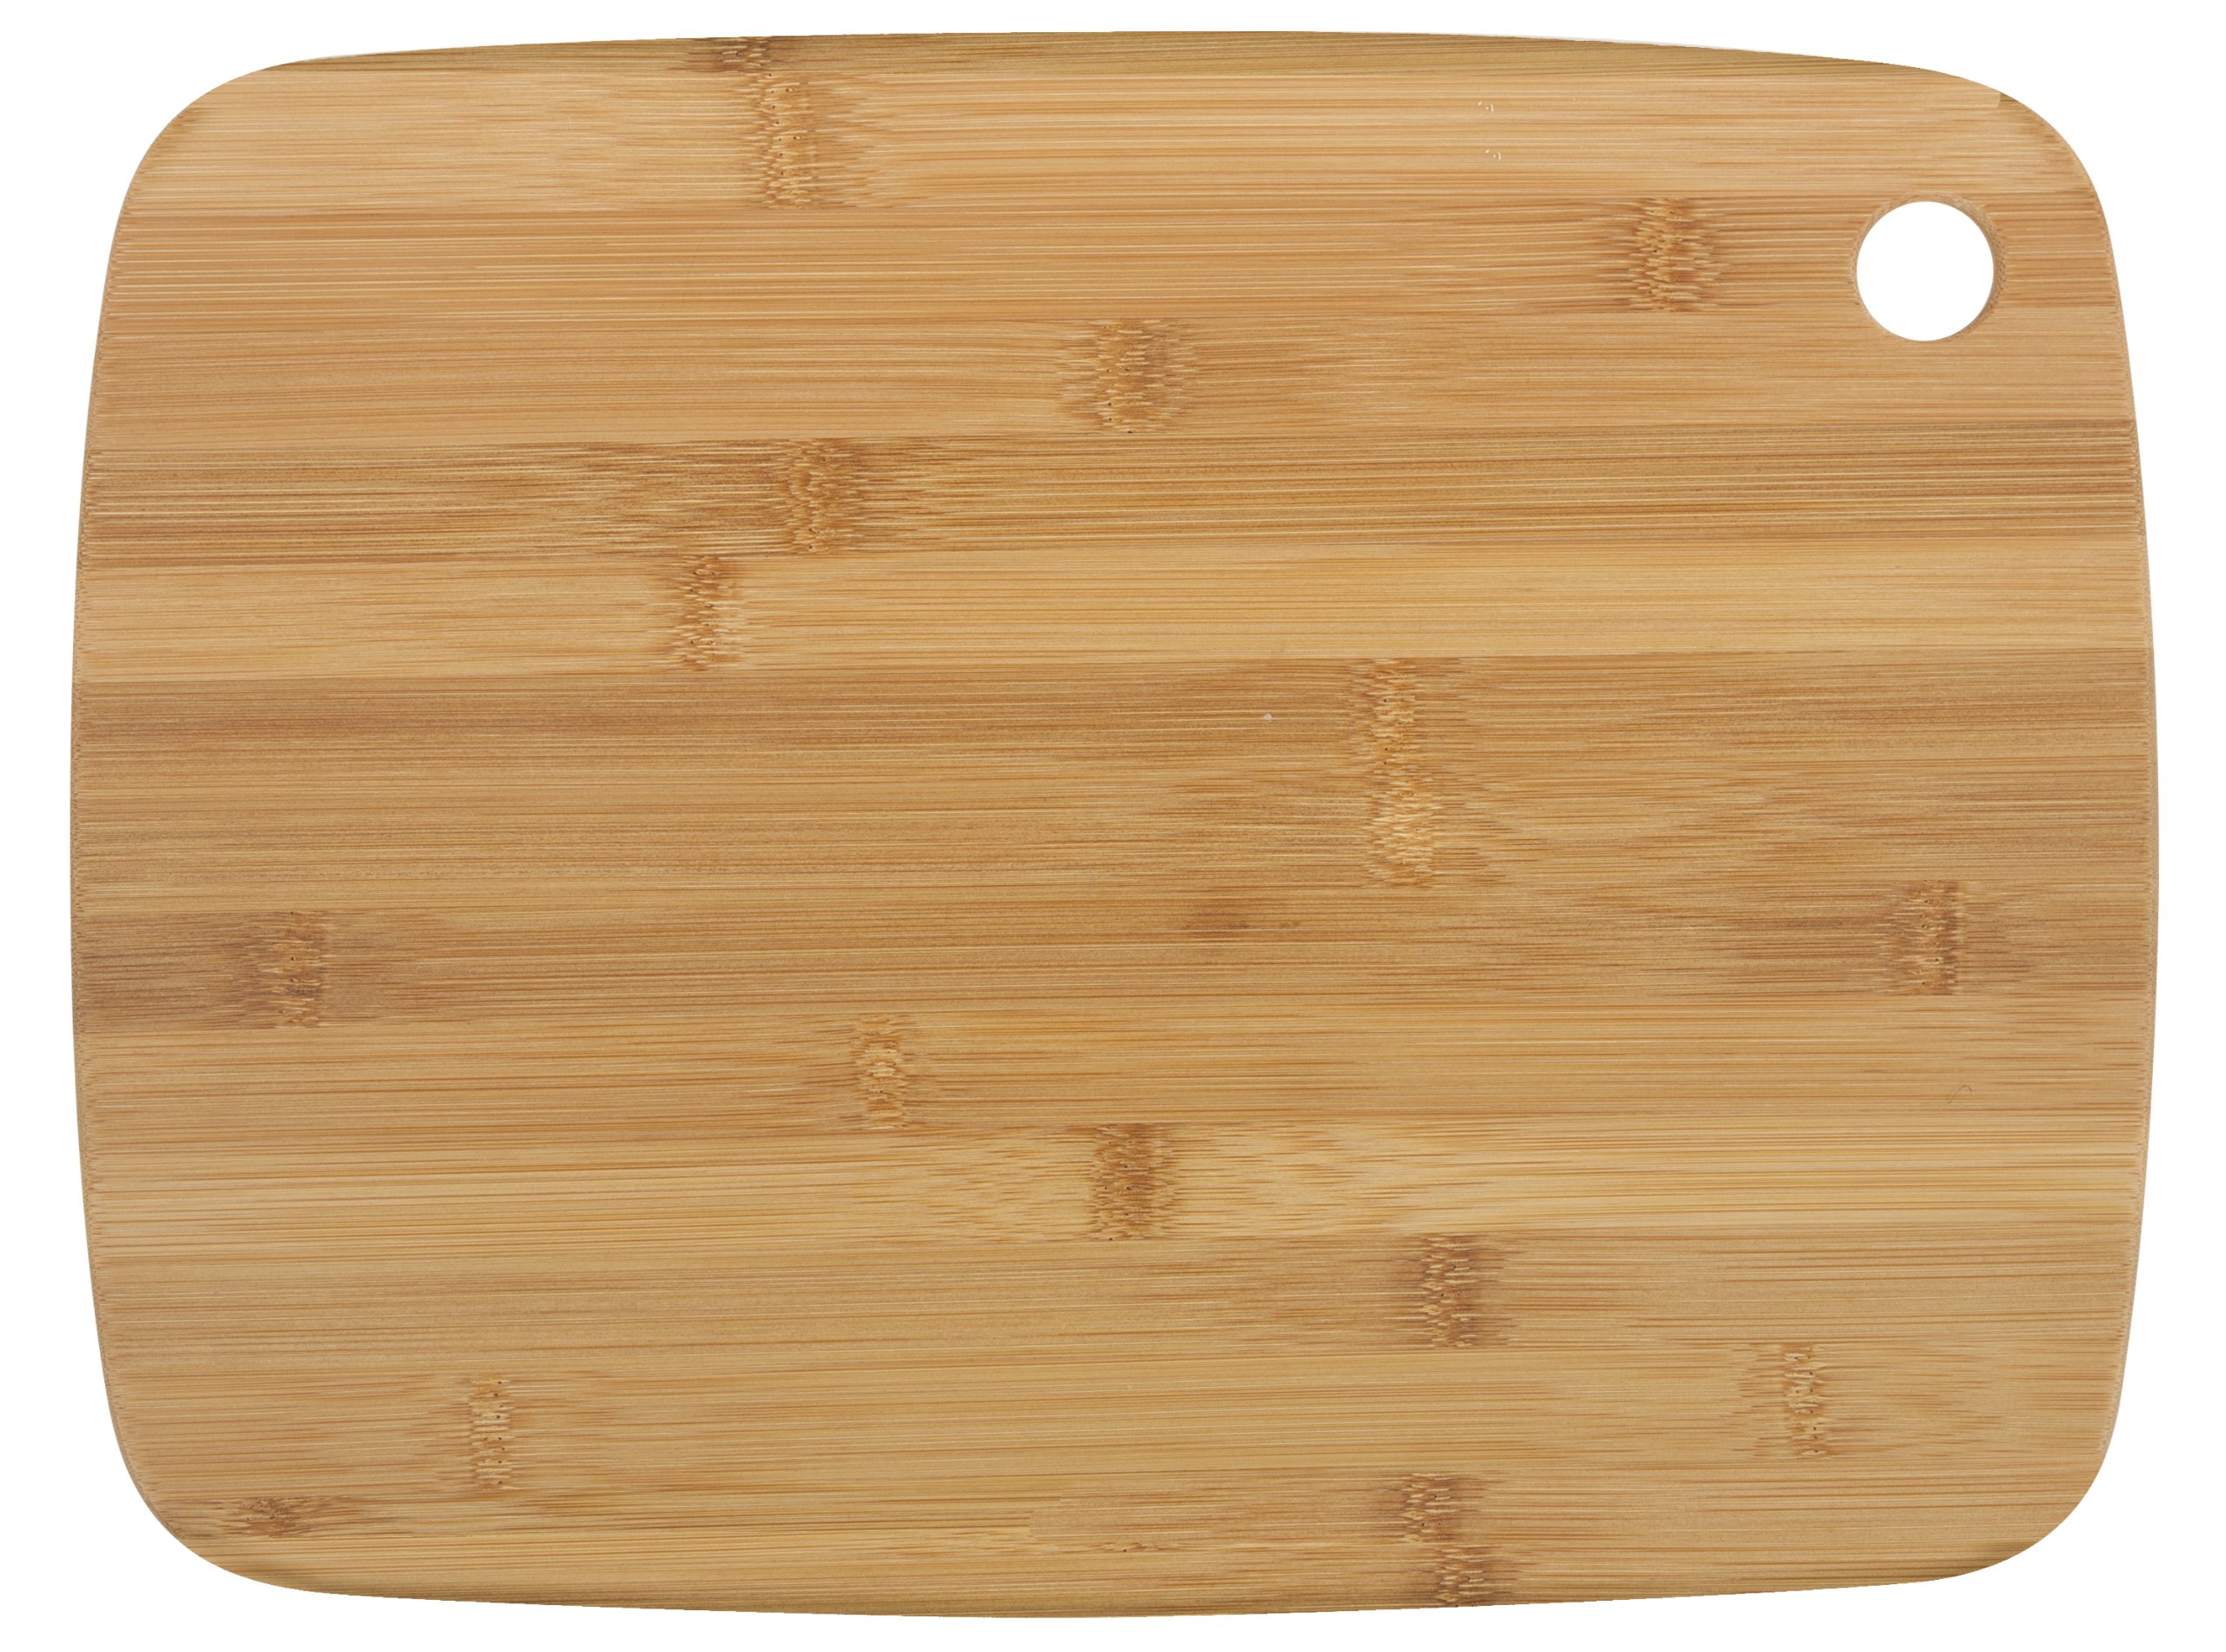 Core Bamboo Classic Bamboo Cutting Board, Large